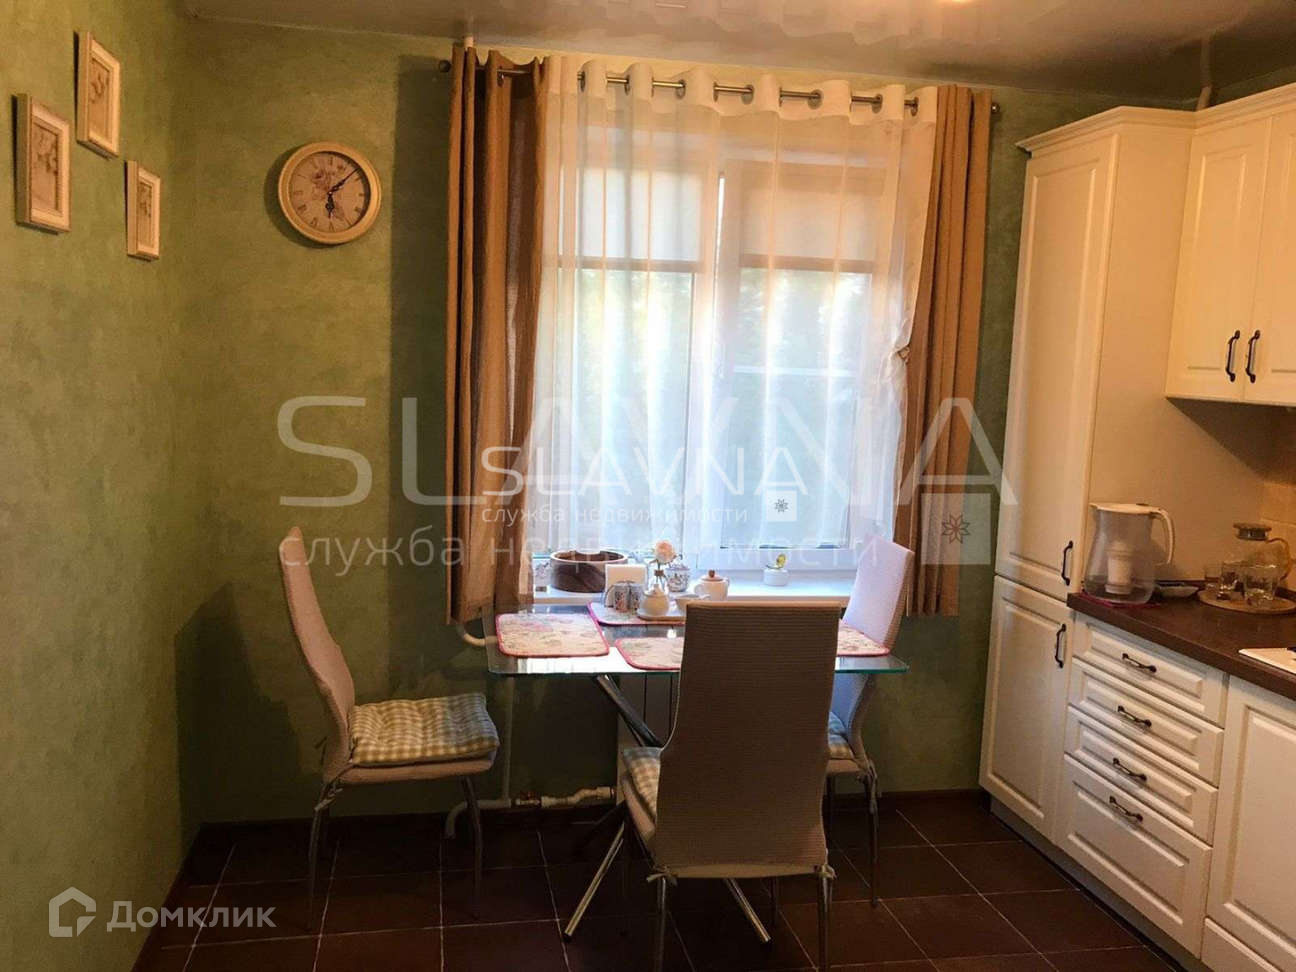 2 комнатную квартиру купить в костроме вторичное. Фото Наты бабушкиной д. 4 в Костроме.